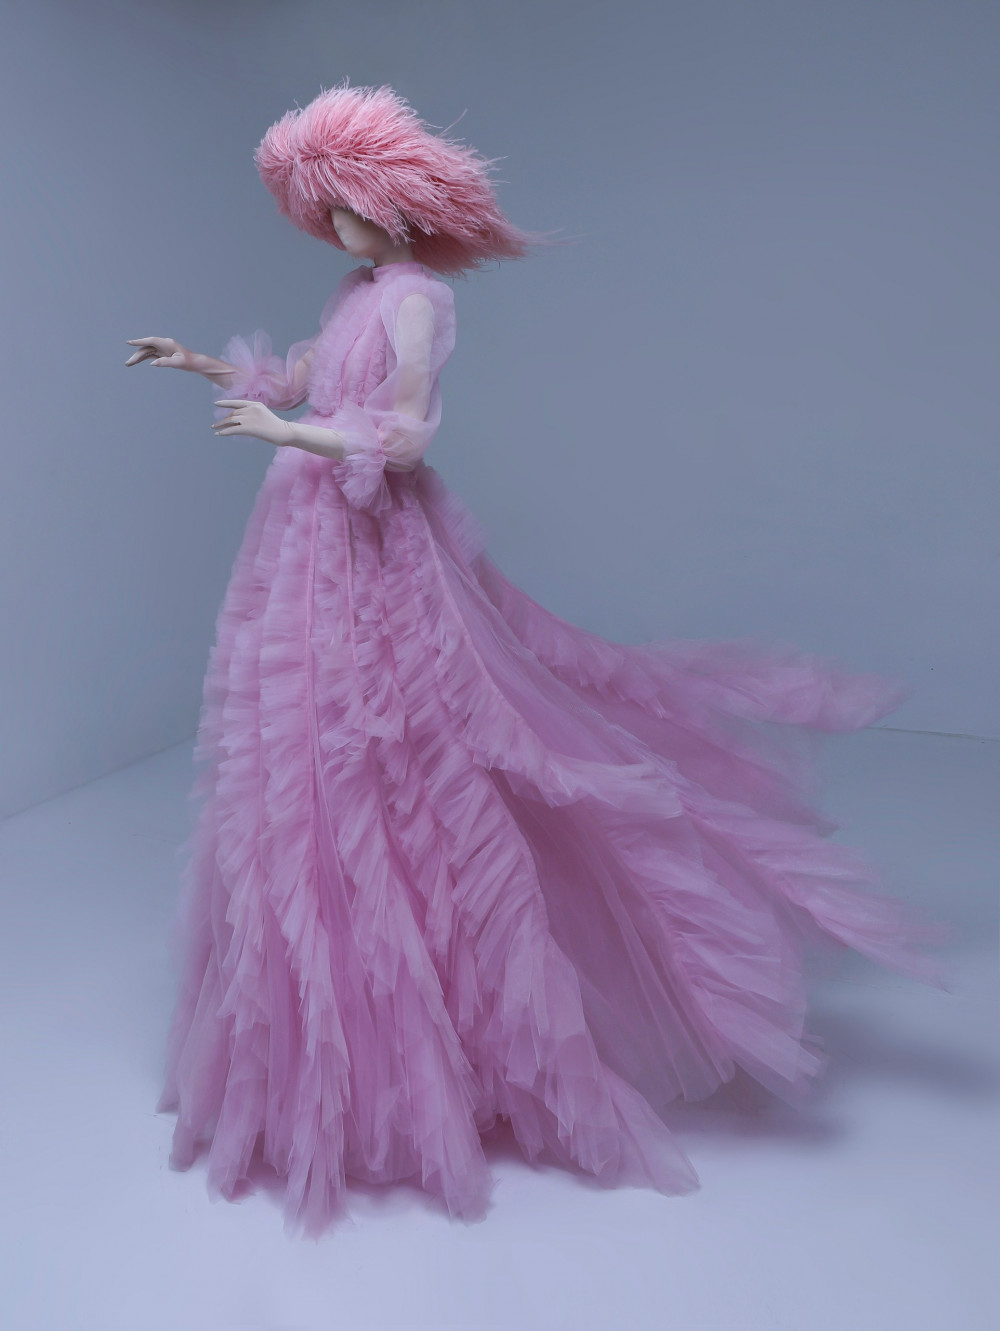 Lối cắt cúp sắc sảo cùng cách phối màu dịu ngọt được nhà thiết kế phát huy tối đa trong những mẫu trang phục công chúa.